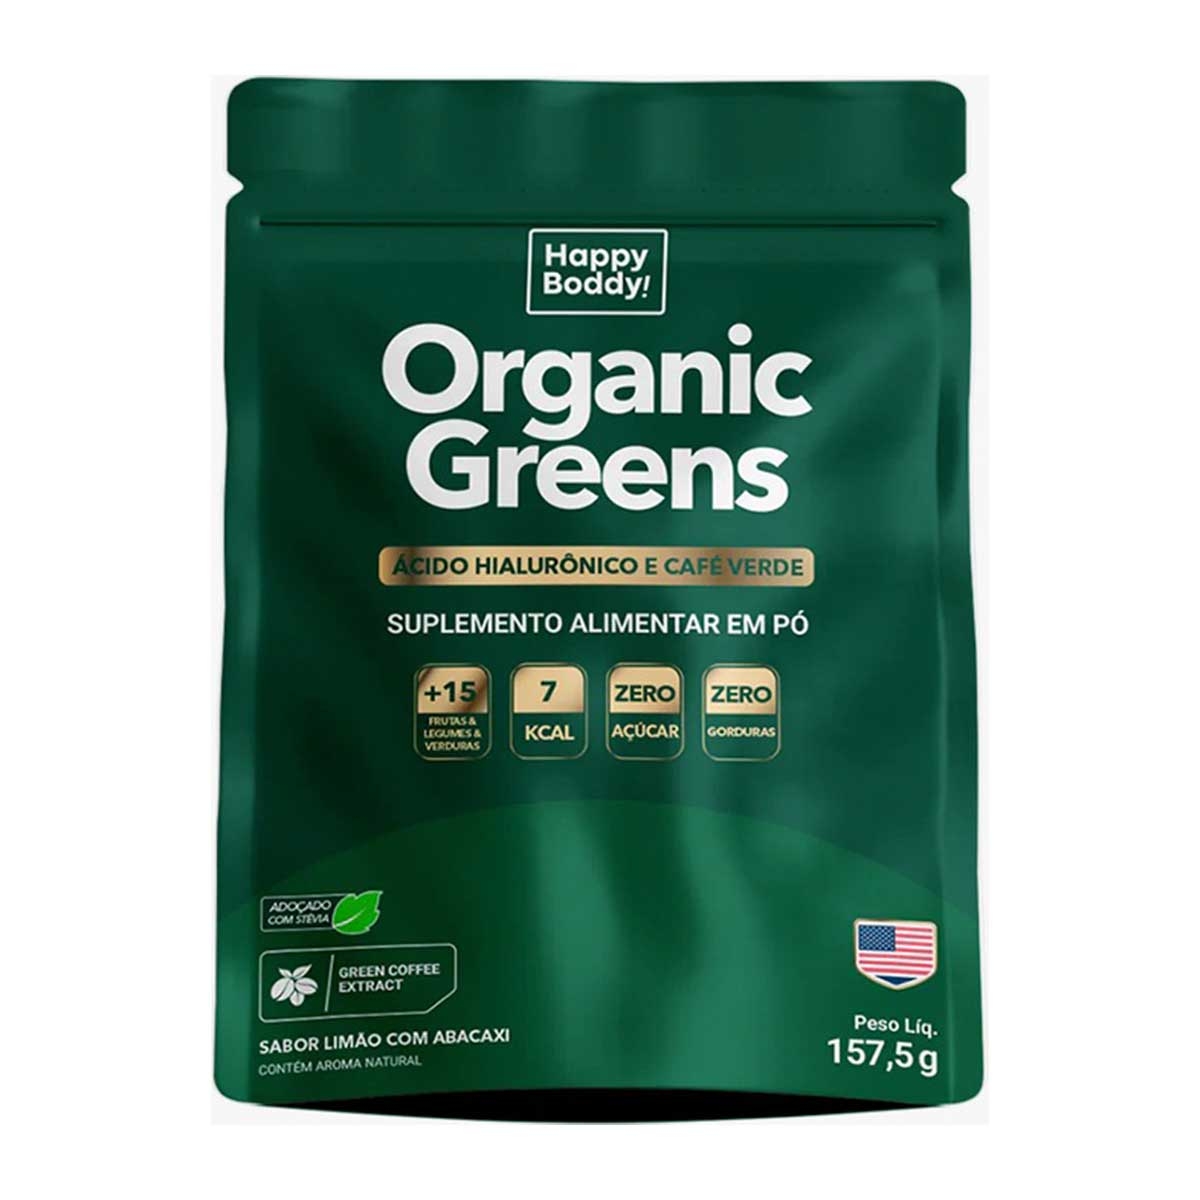 Suplemento Alimentar em Pó Organics Greens Ácido Hialurônico e Café Verde Sabor Limão com Abacaxi 157,5g